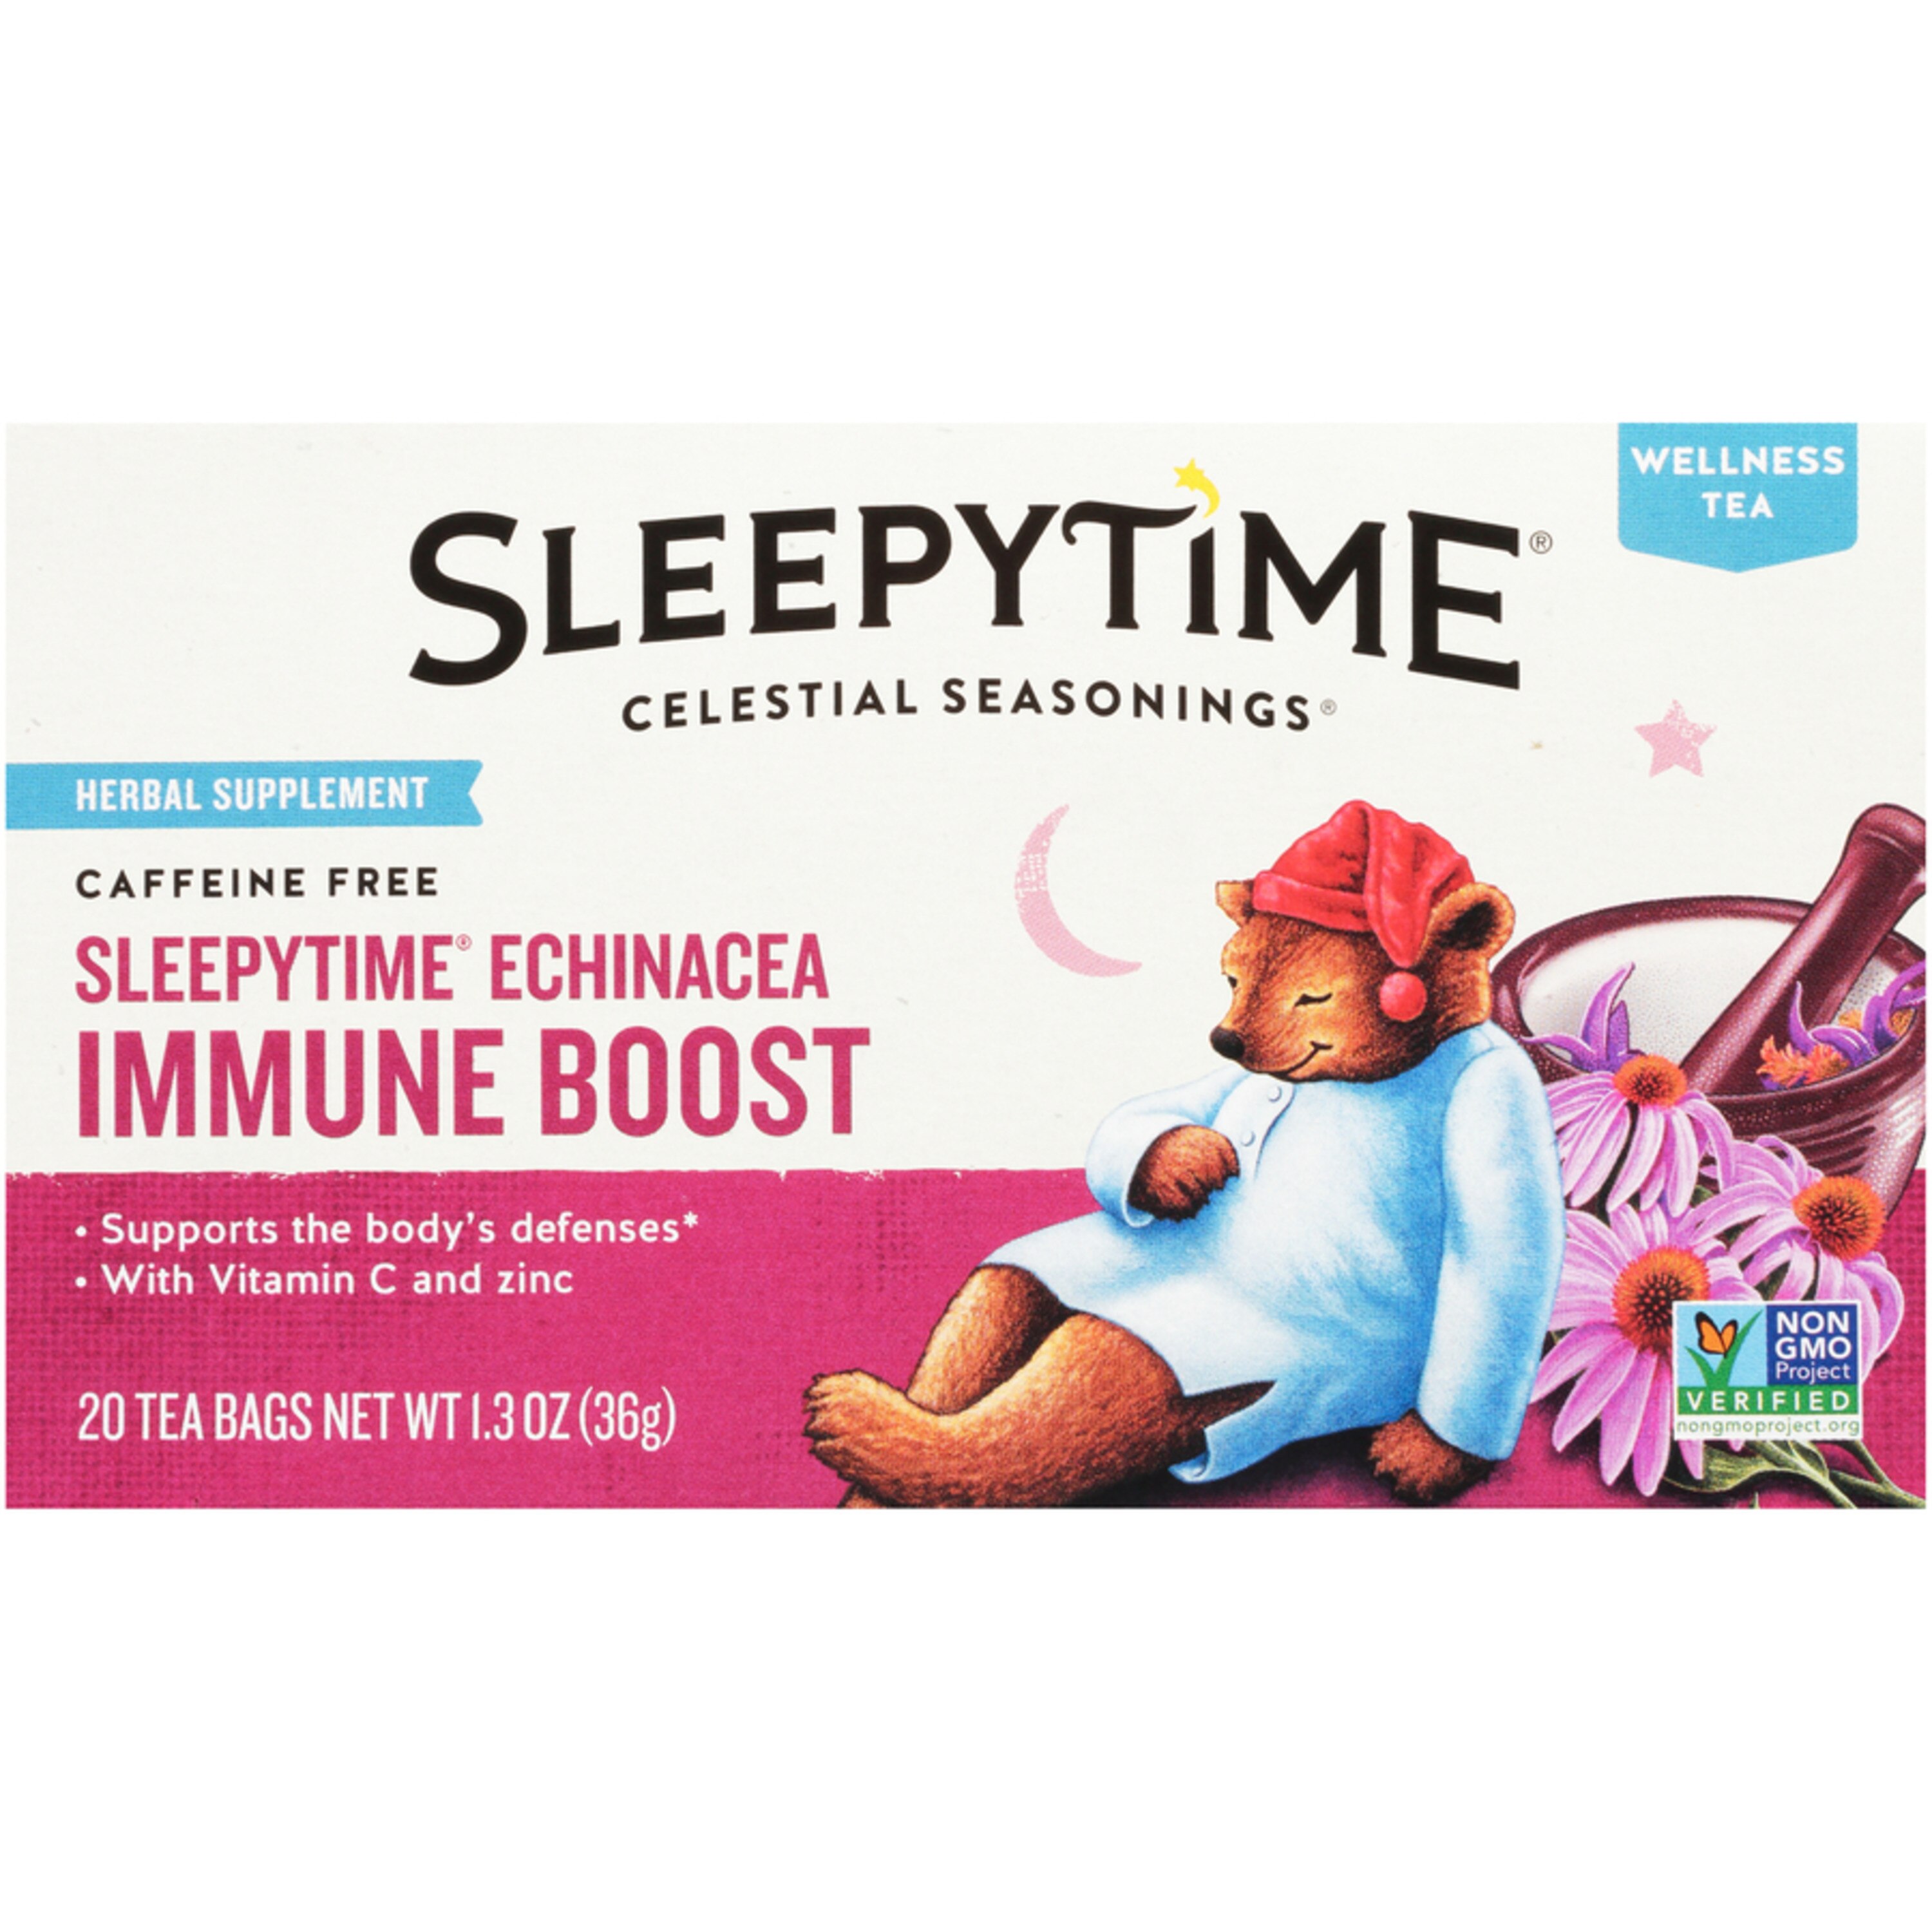 Celestial Seasonings Sleepytime Echinacea Immune Boost Tea Bags, 20 CT